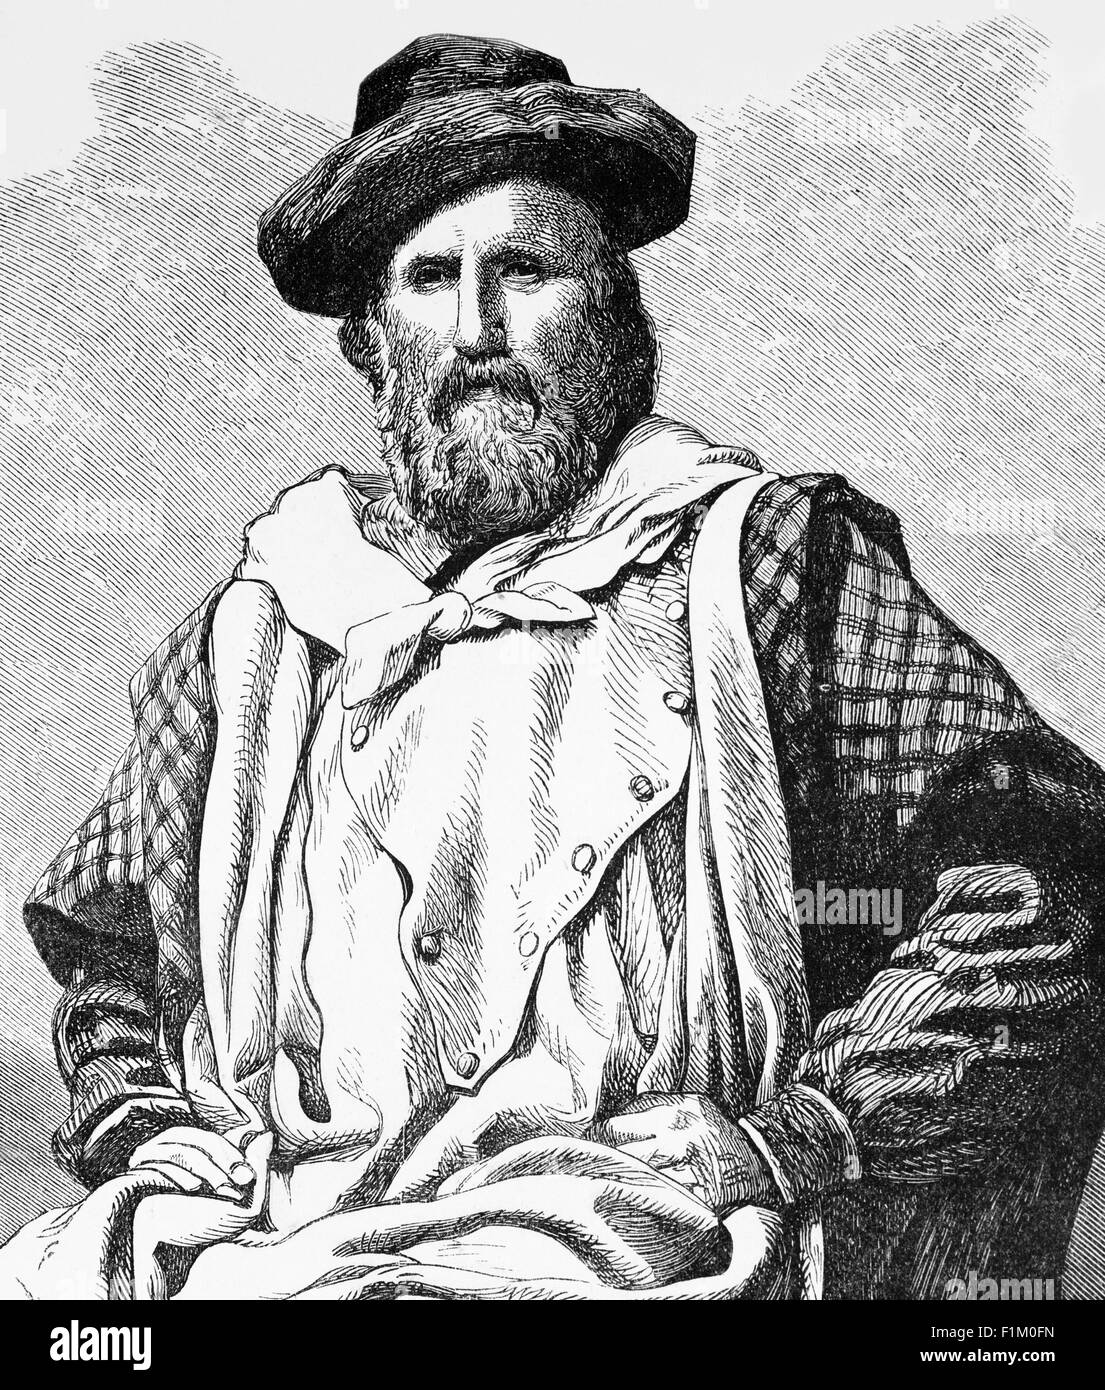 Portrait de Giuseppe Garibaldi (1807-1882), général italien, homme politique et patriote considéré comme l'un des plus grands généraux de l'époque moderne. Connu comme l'un des « pères de la patrie » de l'Italie, il est devenu un partisan de l'unification italienne sous un gouvernement républicain démocratique, mais après avoir participé à un soulèvement dans le Piémont, il a été condamné à mort. Il s'est échappé en naviguant vers l'Amérique du Sud et a passé 14 ans en exil. En 1848, il est retourné en Italie et a commandé et combattu dans des campagnes militaires qui ont finalement conduit à l'unification italienne. Banque D'Images